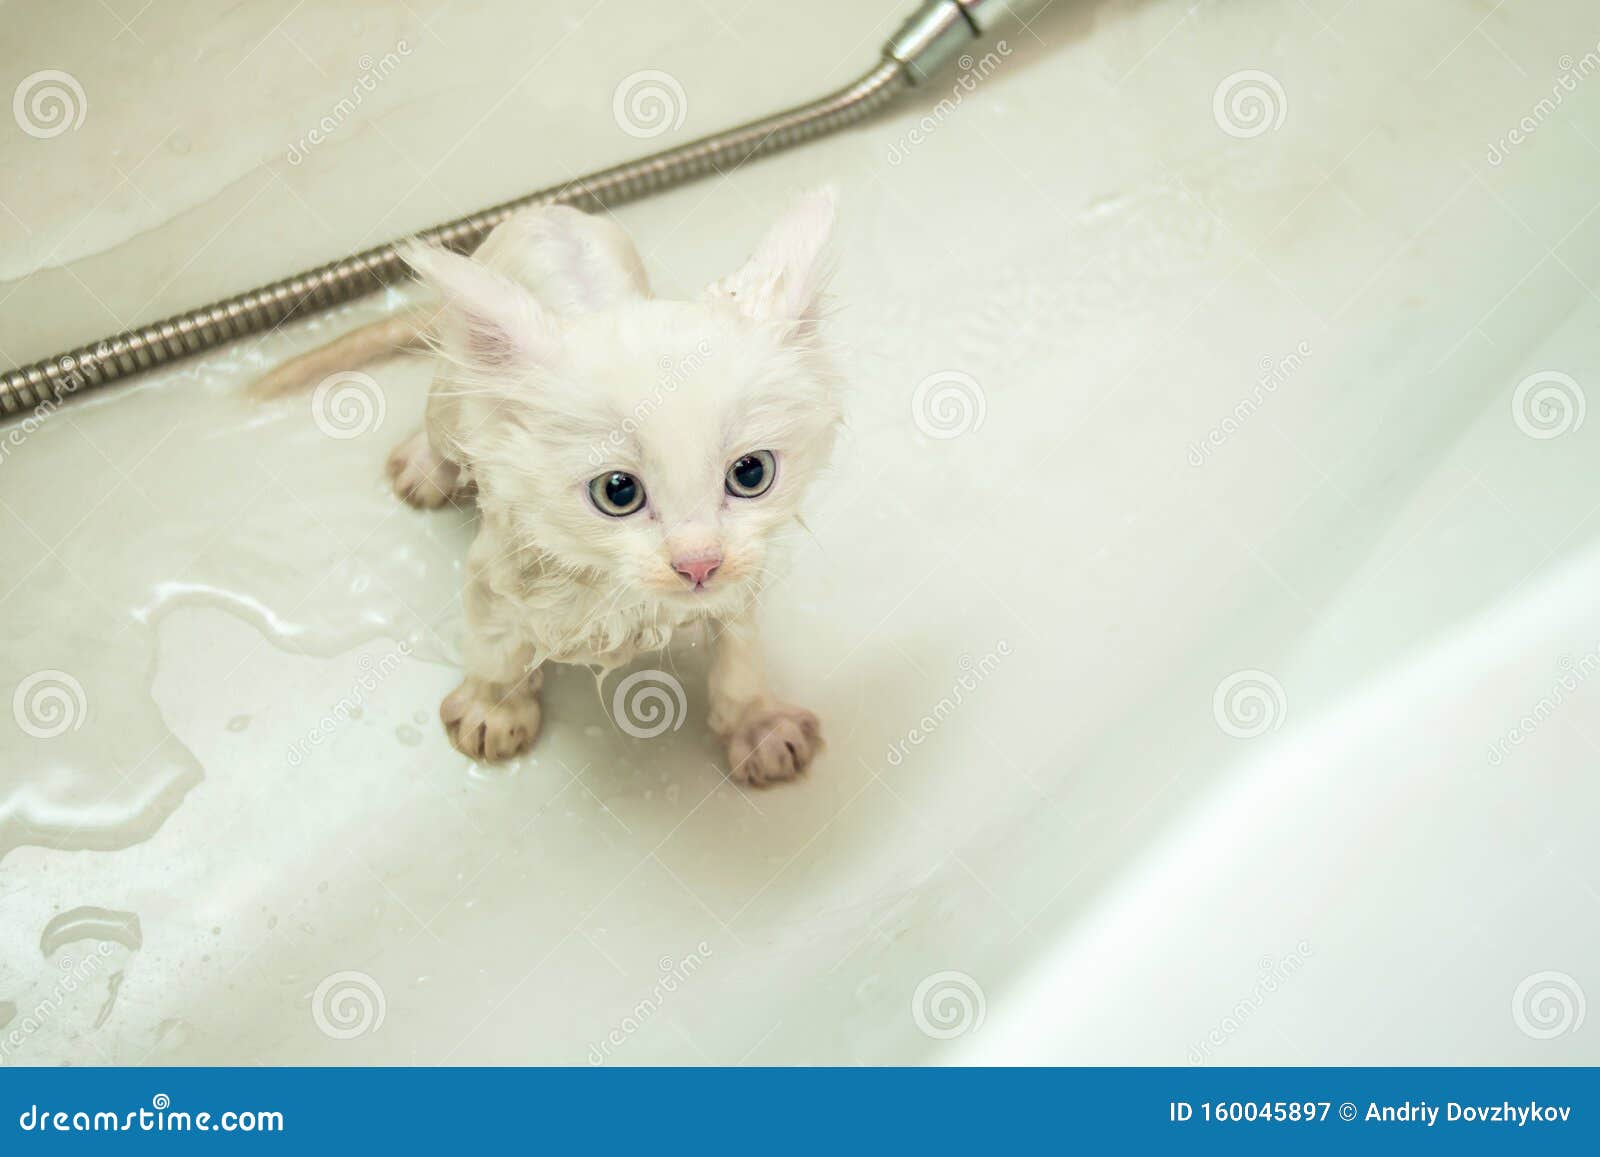 Wet kitty onlyfan